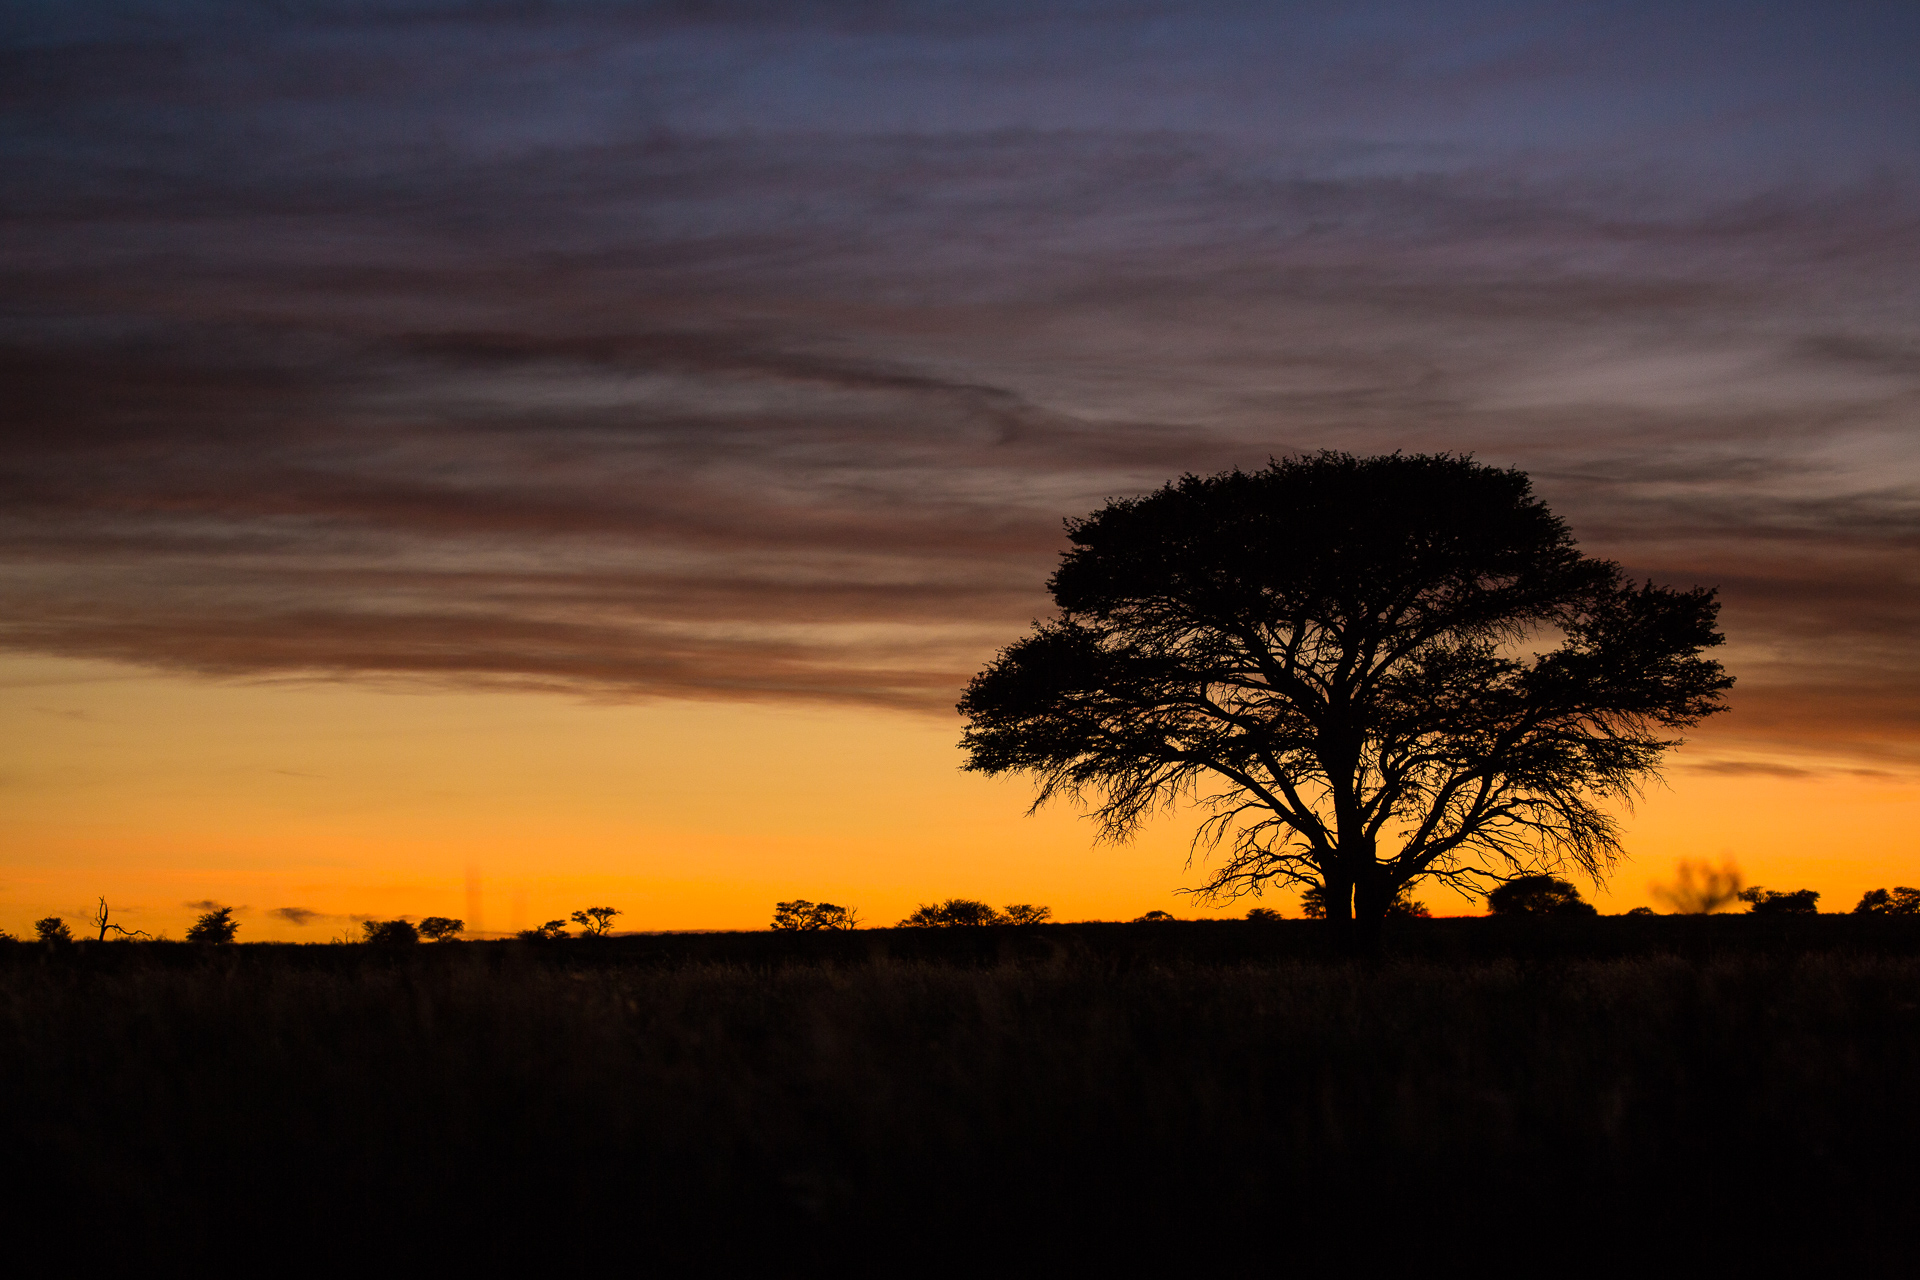 Sunset, Krugerpark, South Africa